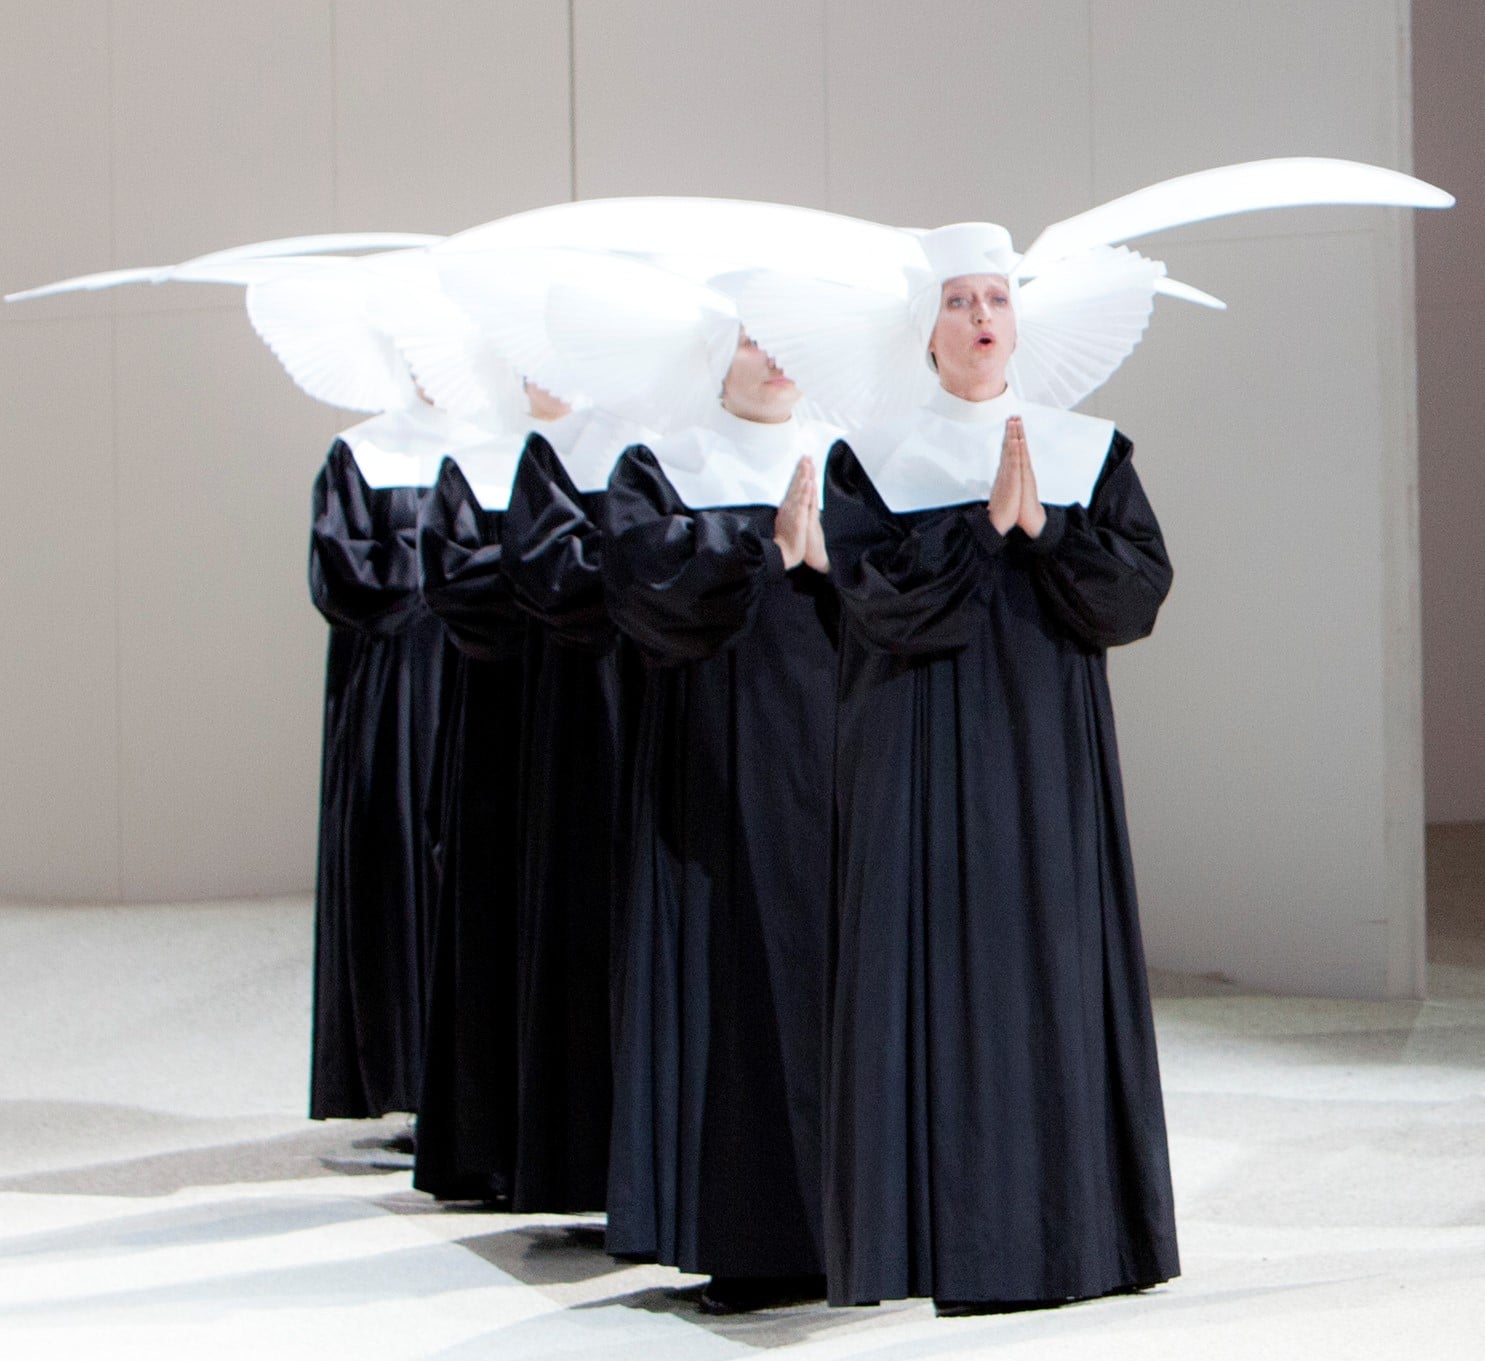 Eva Kroon (de voorste van de groep) als 'Un Musico' in Manon Lescaut bij De Nationale Opera. (© Bernd Uhlig)